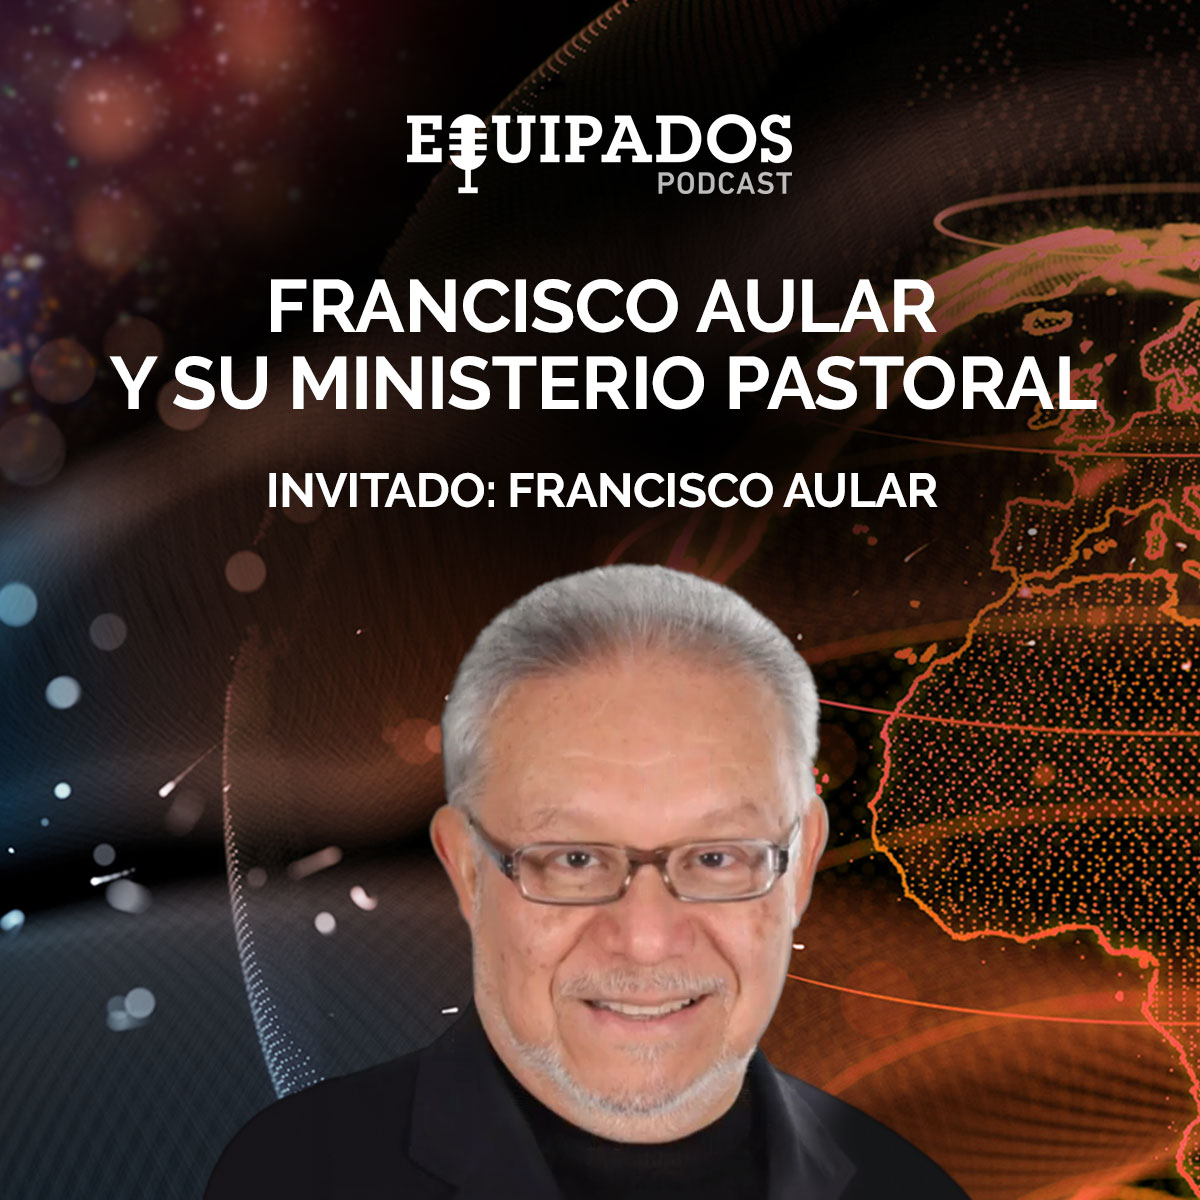 Episodio 024 - Francisco Aular y su ministerio pastoral